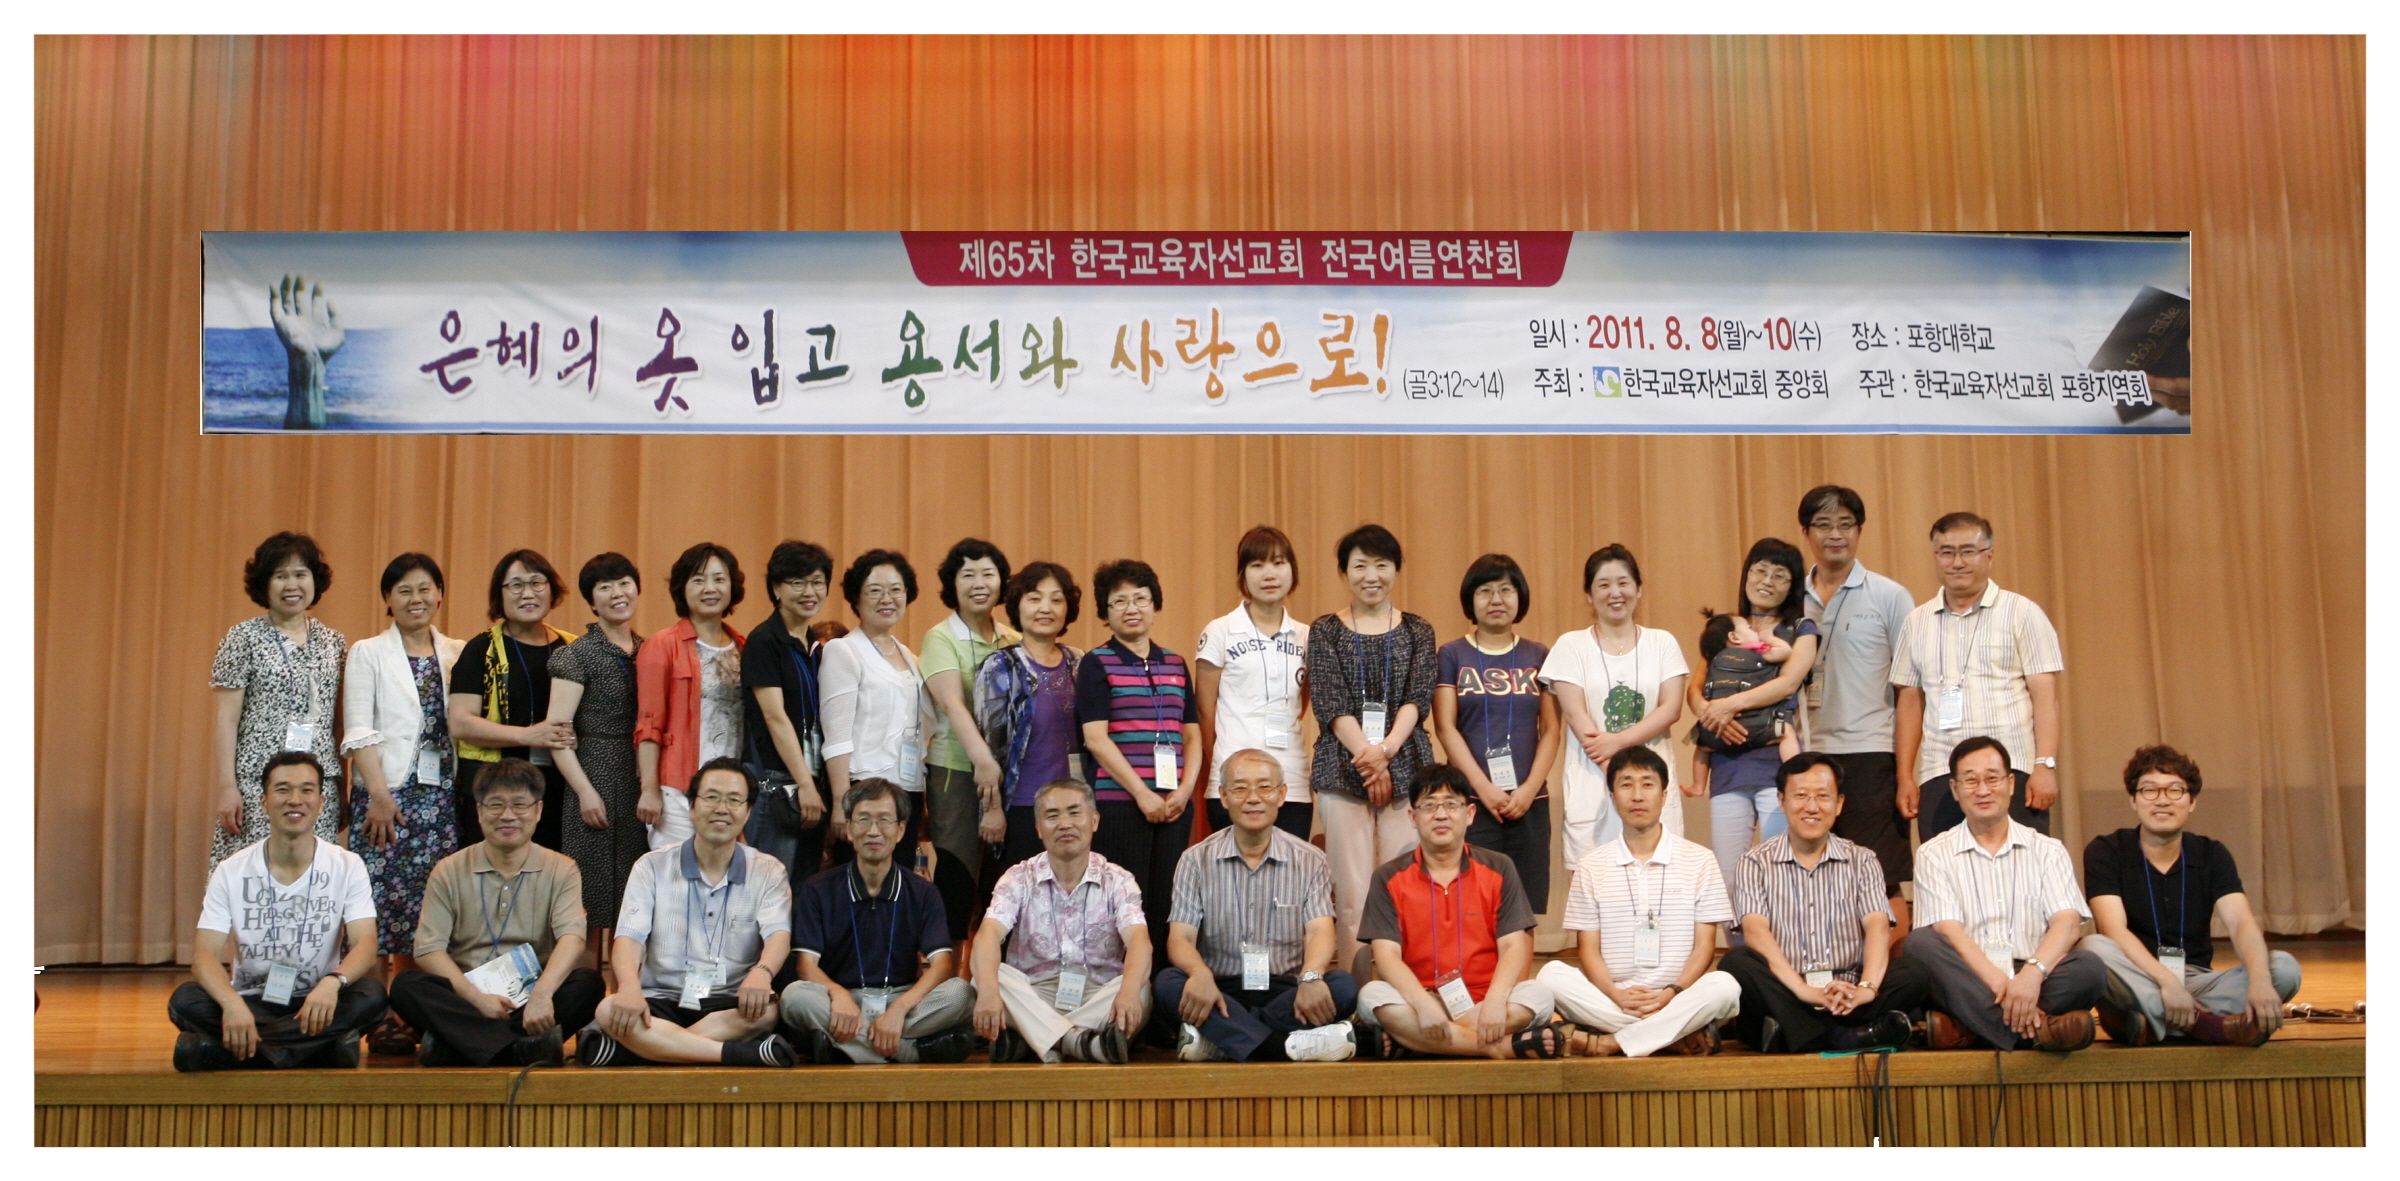 인천지방회 단체 사진